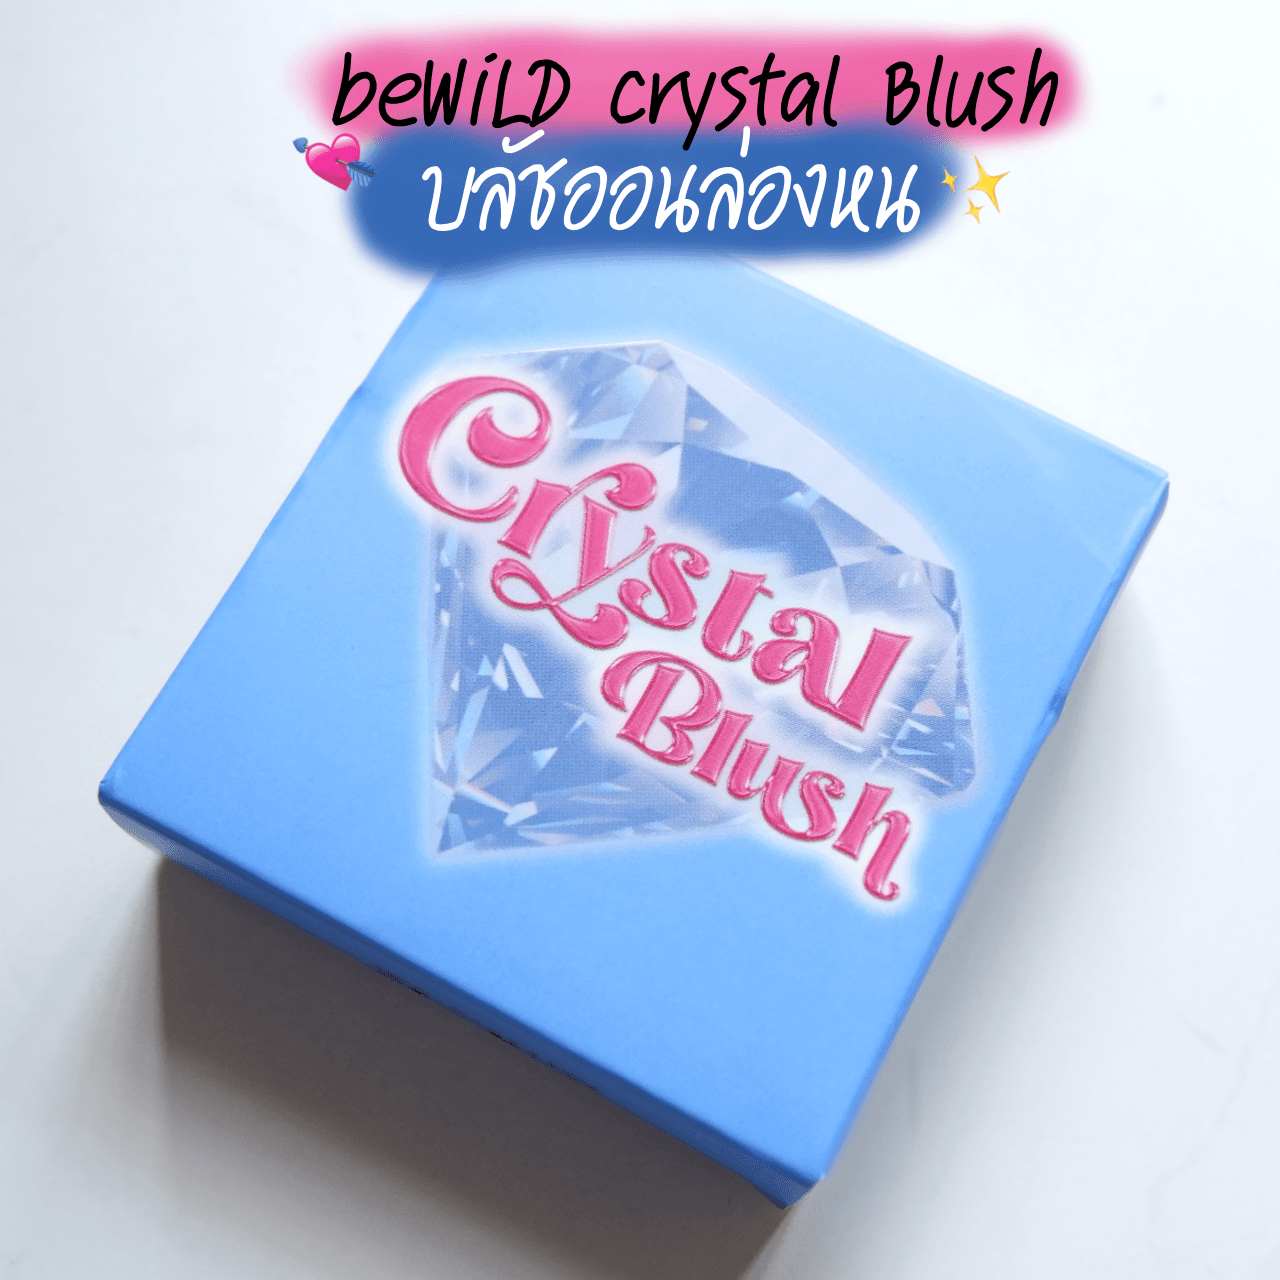 ภาพหน้าปก บลัชออนล่องหน Crytal Blush แบรนด์ beWiLD 💘✨ ที่:1